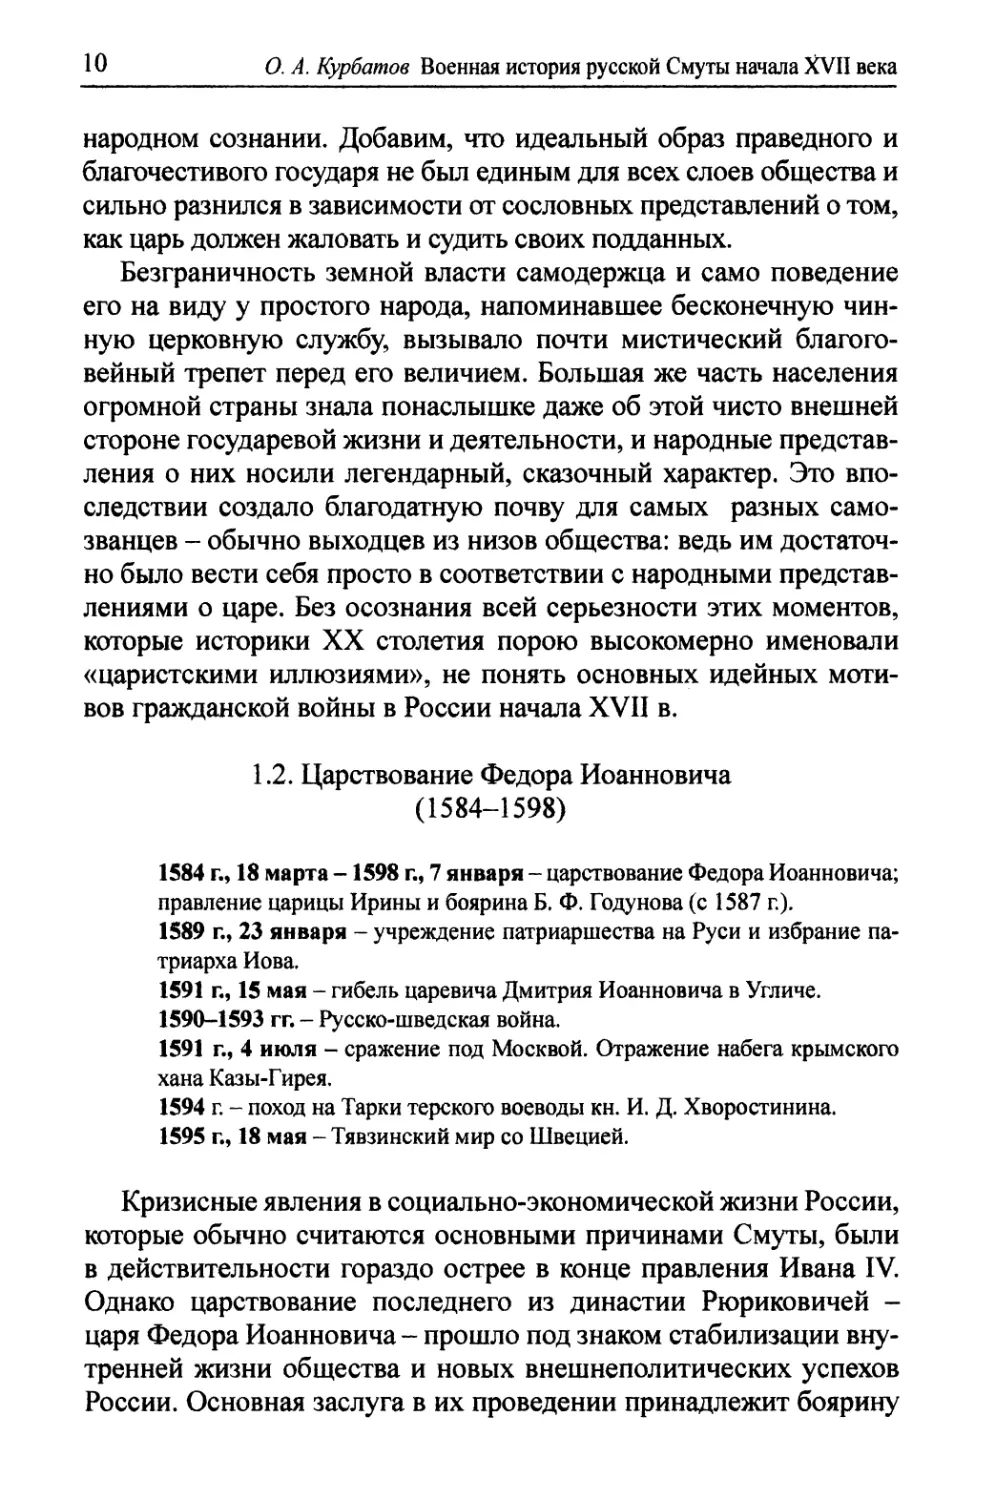 1.2. Царствование Федора Иоанновича (1584-1598)